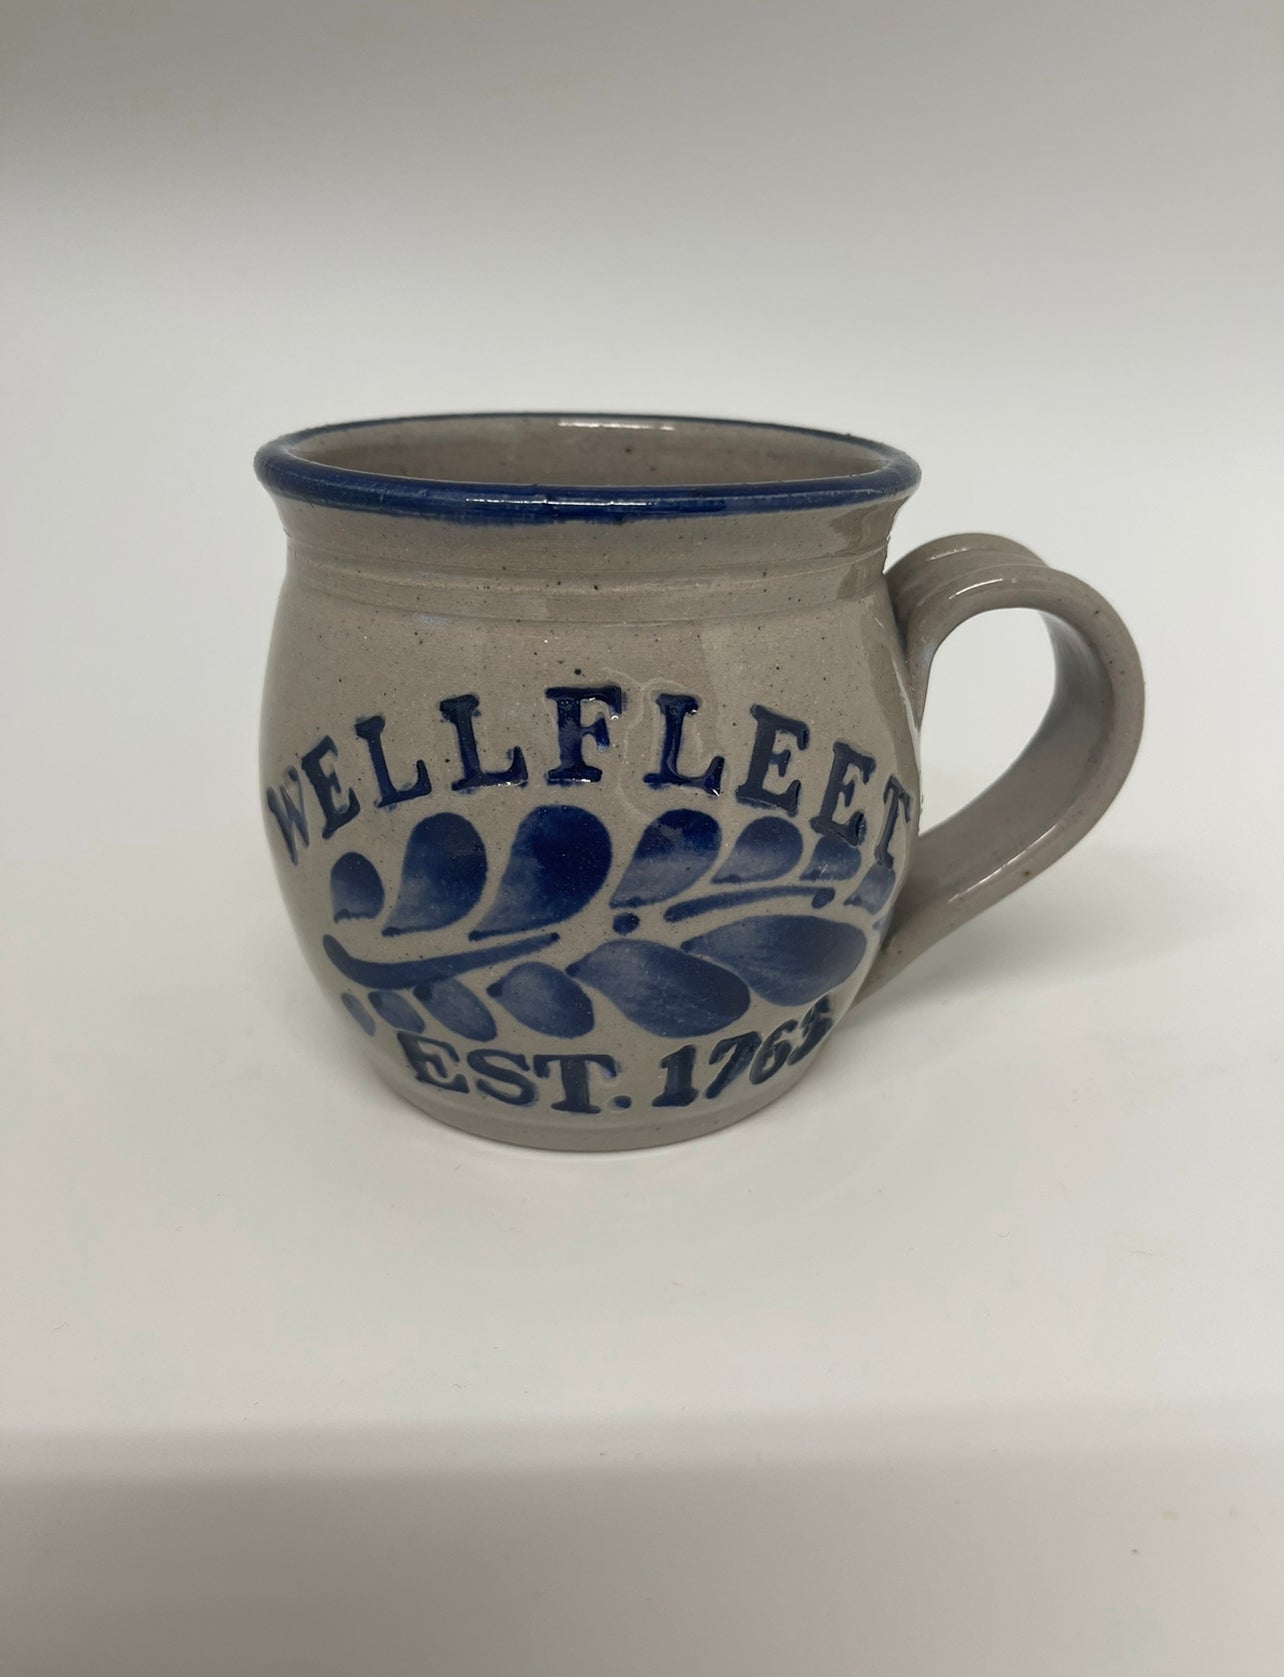 Wellfleet Pottery Mug